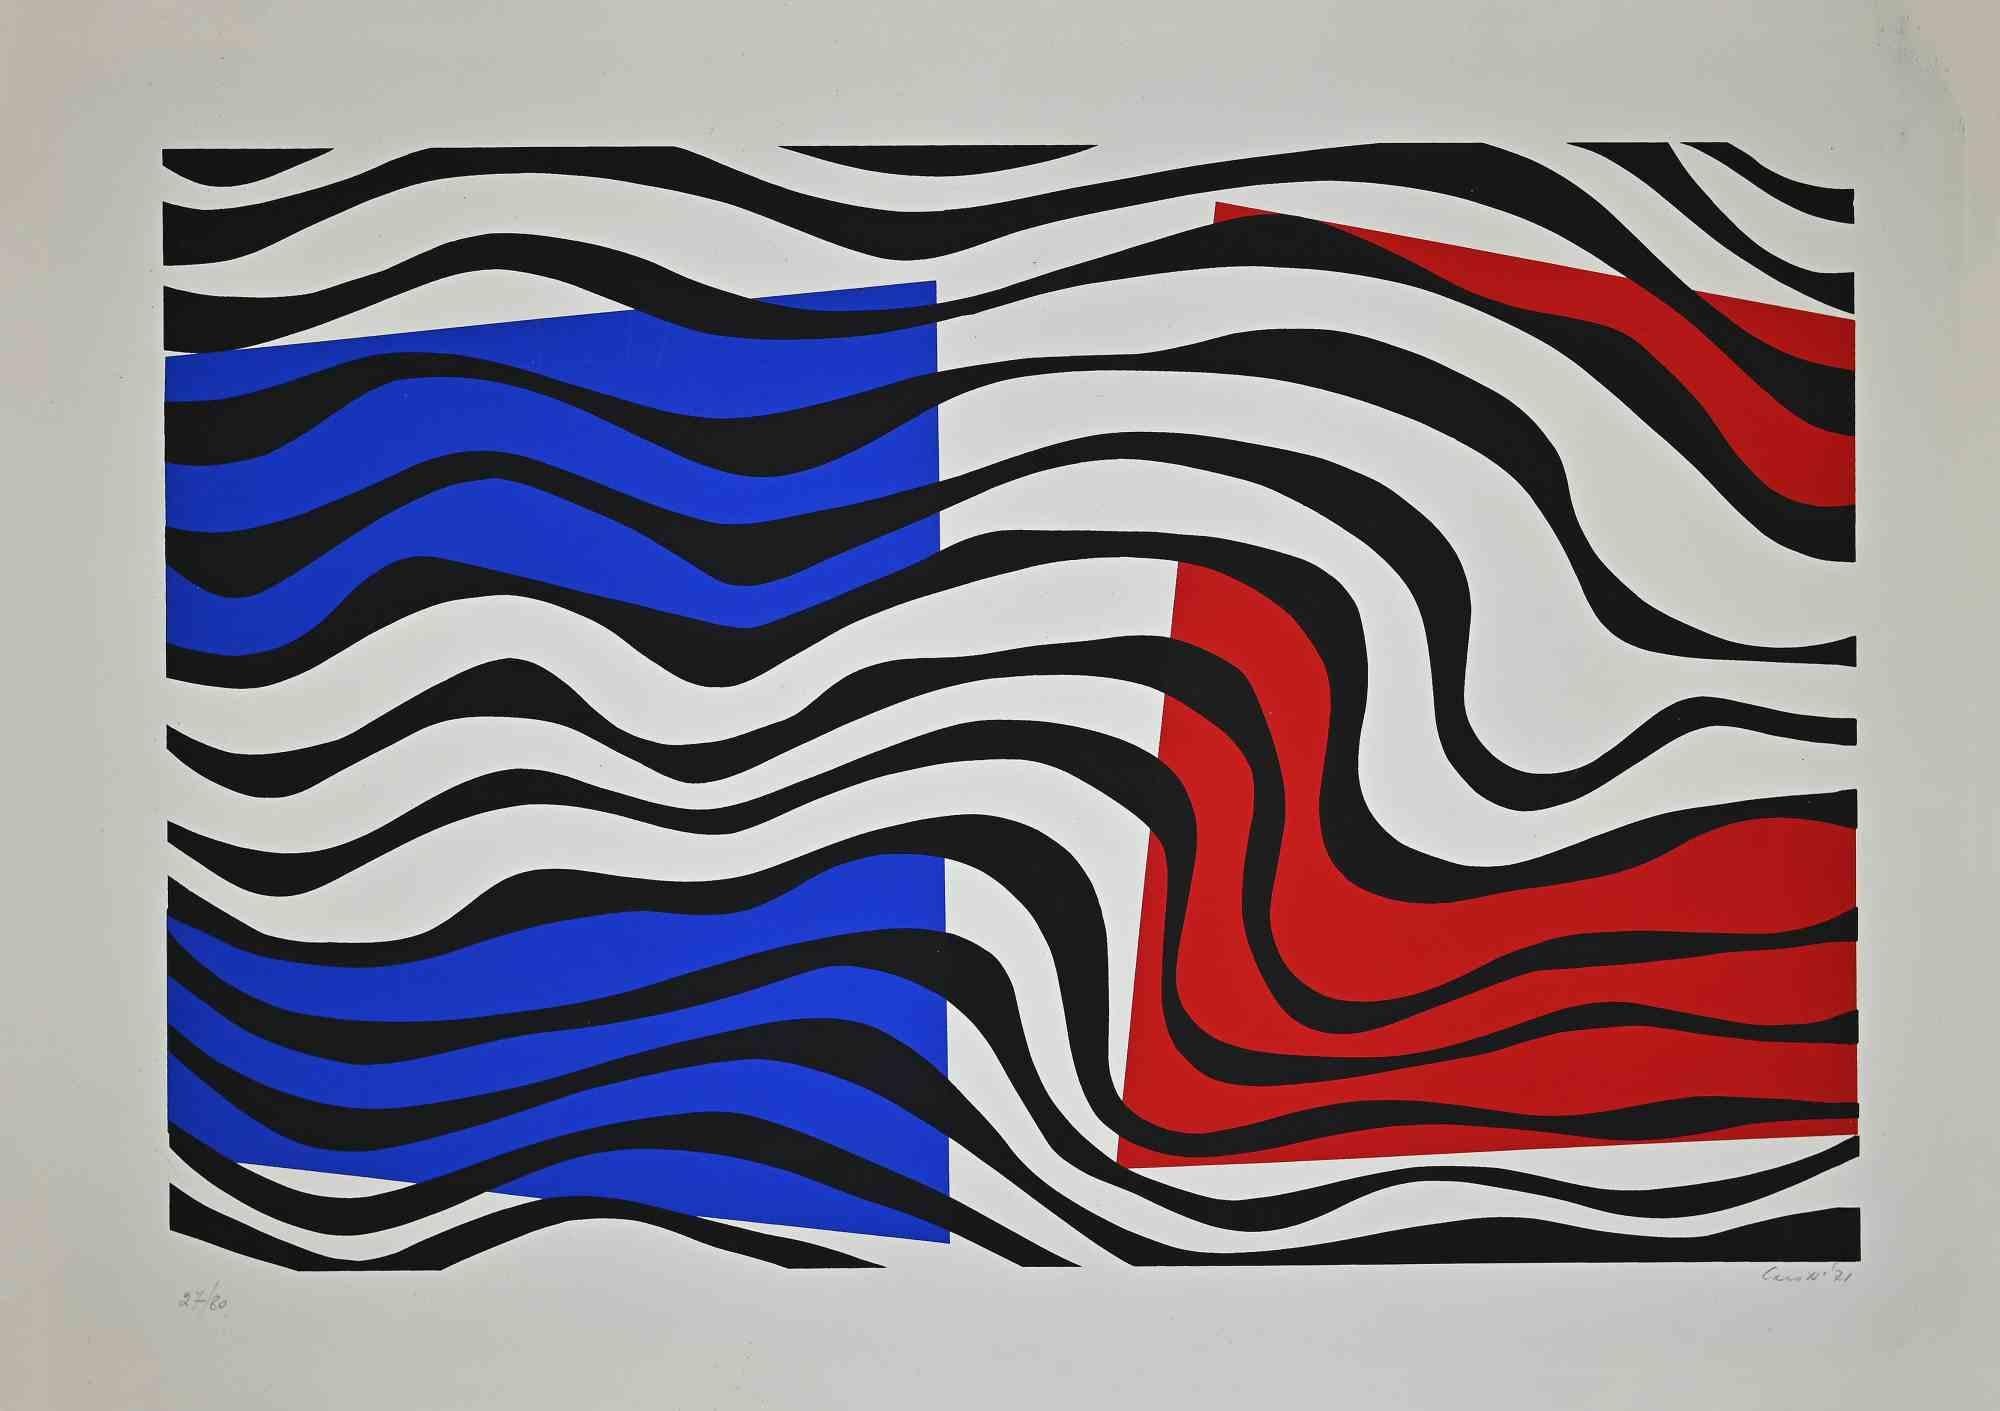 Composition bleue et rouge  est une sérigraphie réalisée par Umberto Maria Casotti en 1971.

Signé à la main et daté en bas à droite.  Numéroté en bas à gauche. Edition de 27/80 tirages

L'état de conservation de l'œuvre est bon, à l'exception de